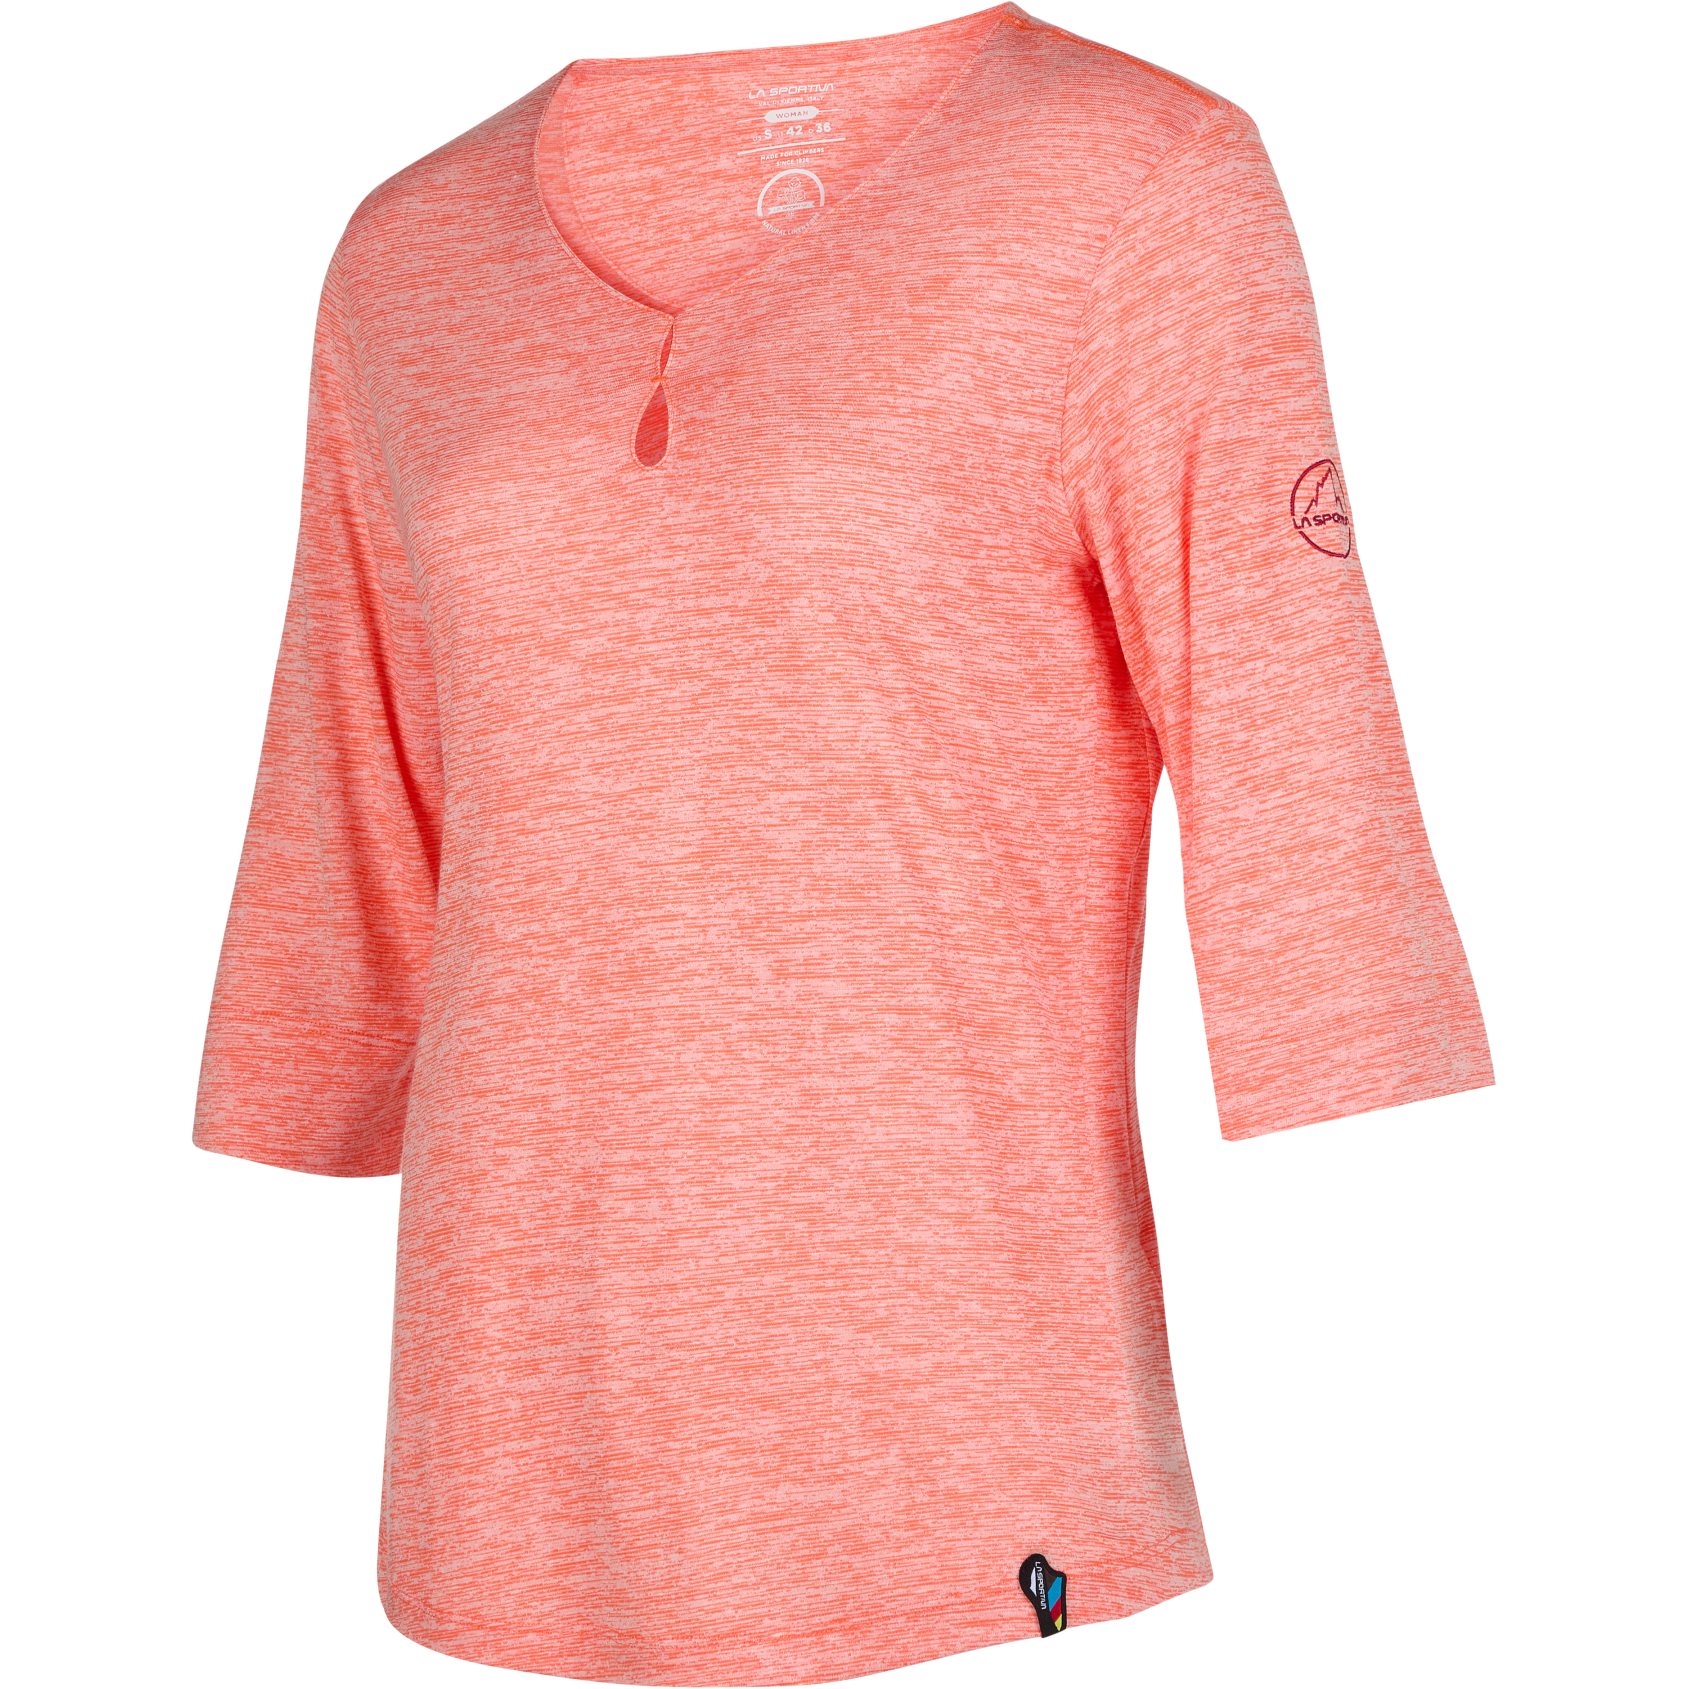 Produktbild von La Sportiva Wildflower T-Shirt Damen - Flamingo